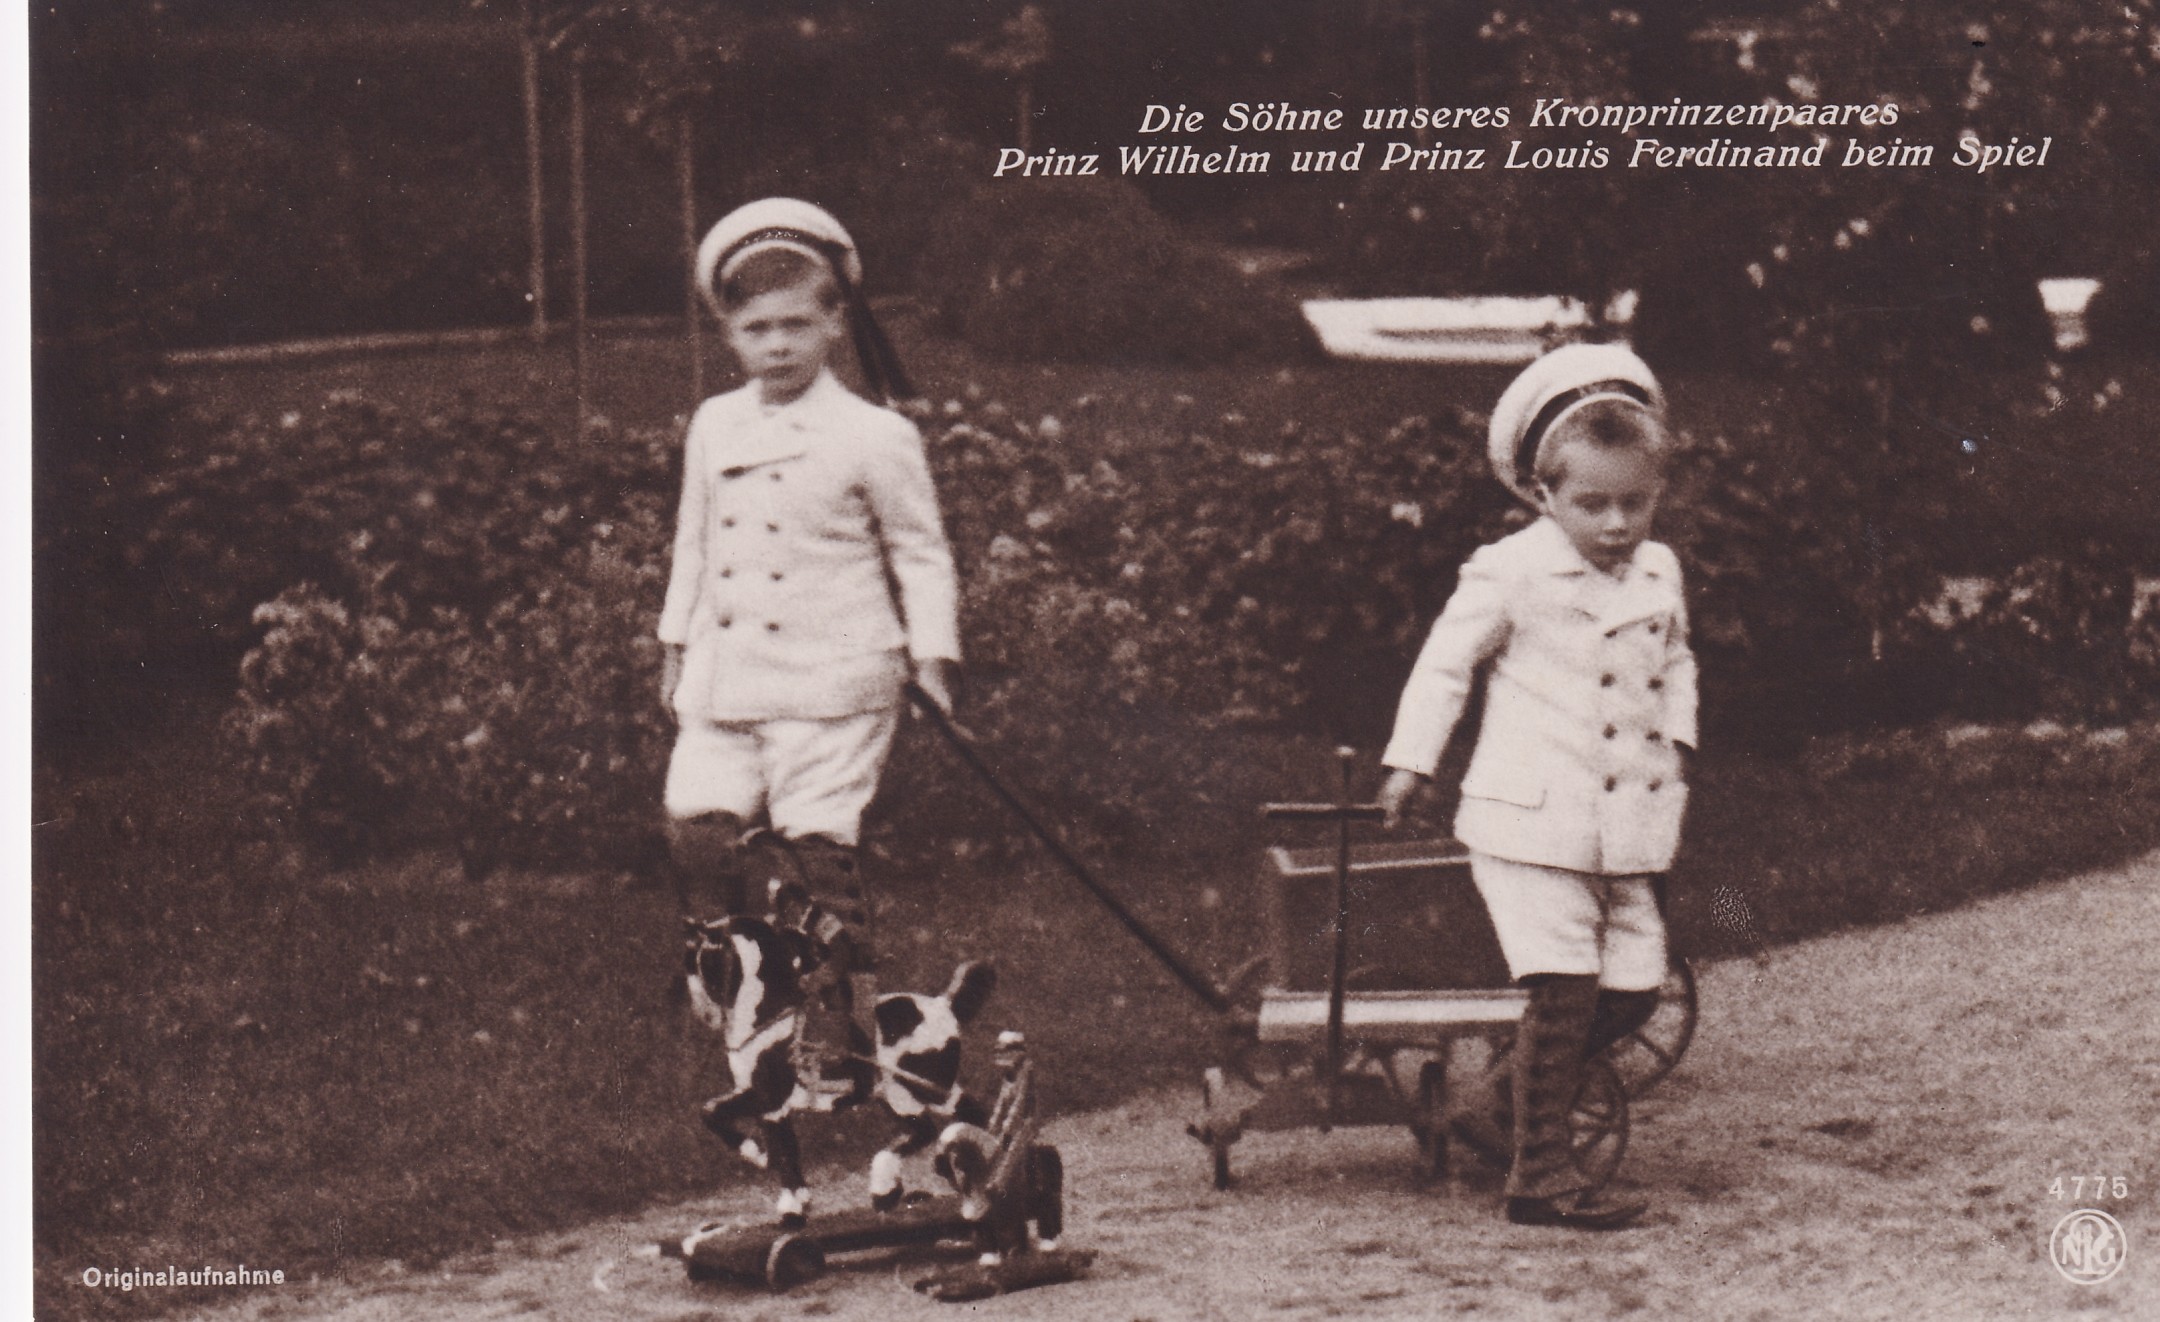 Bildpostkarte mit den beiden ältesten Söhnen des Kronprinzenpaares beim Spielen im Garten, 1910 (Schloß Wernigerode GmbH RR-F)